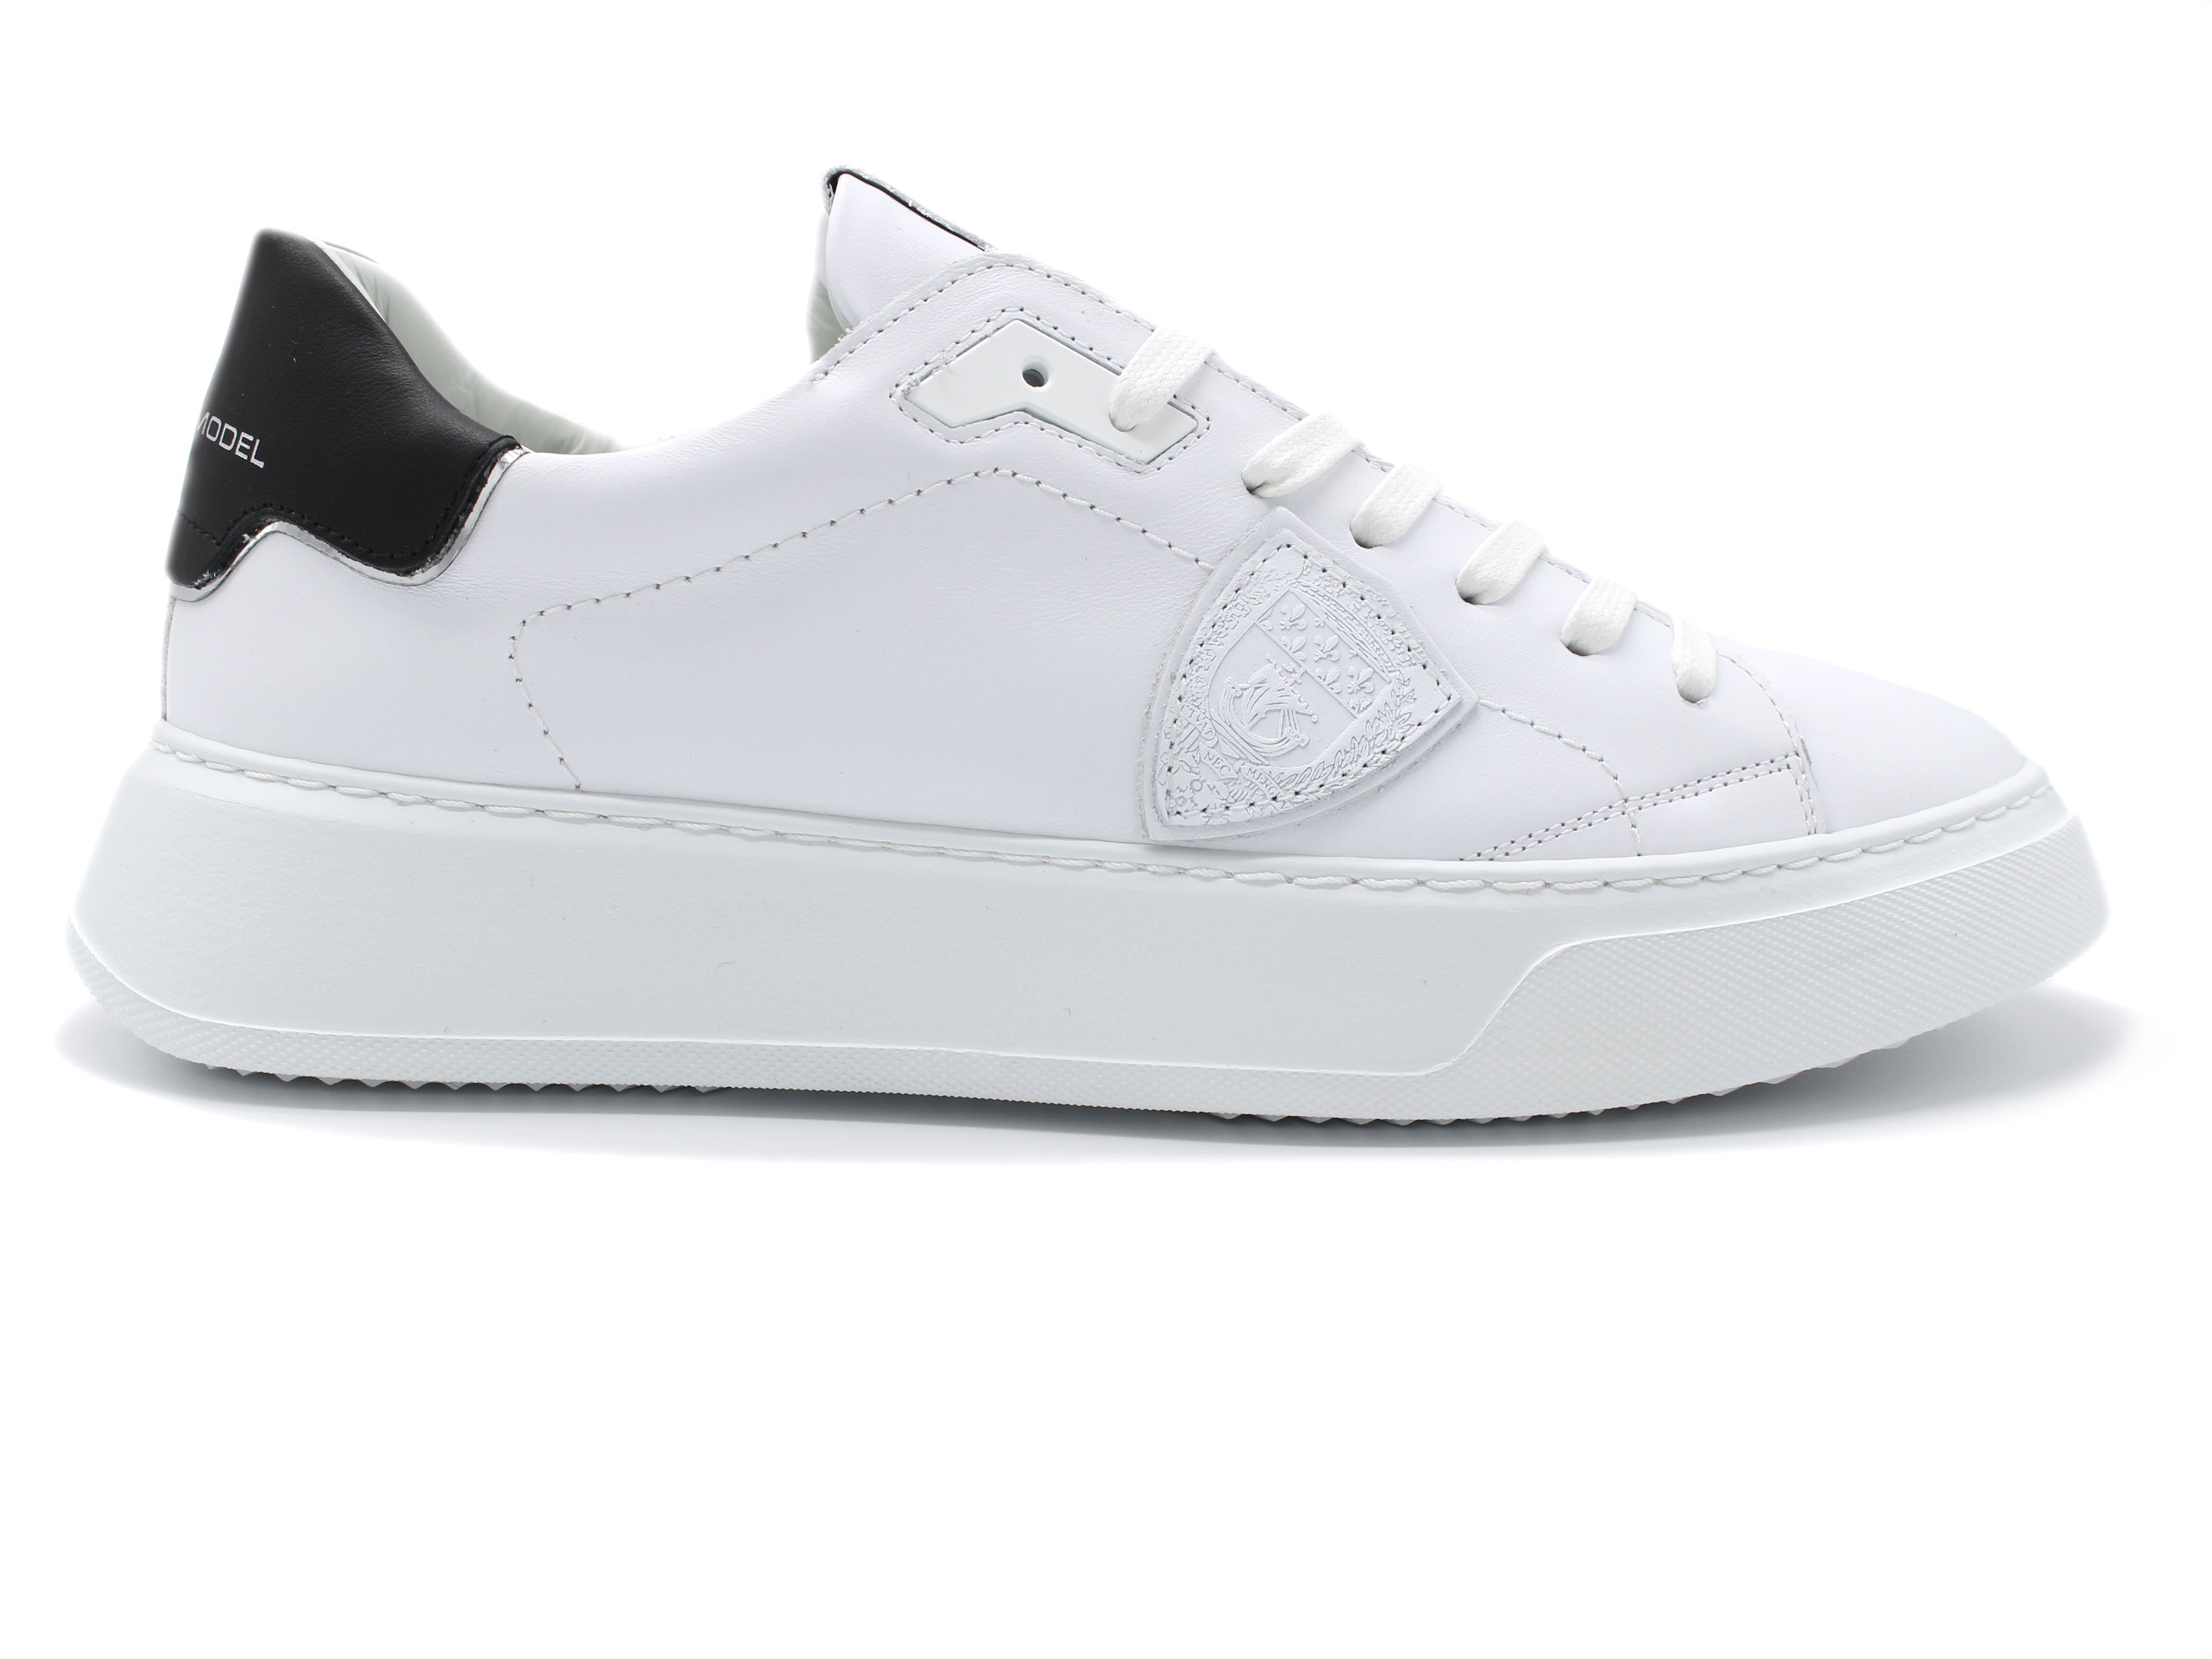 TEMPLE VEAU BTLUV007 shoes white-black